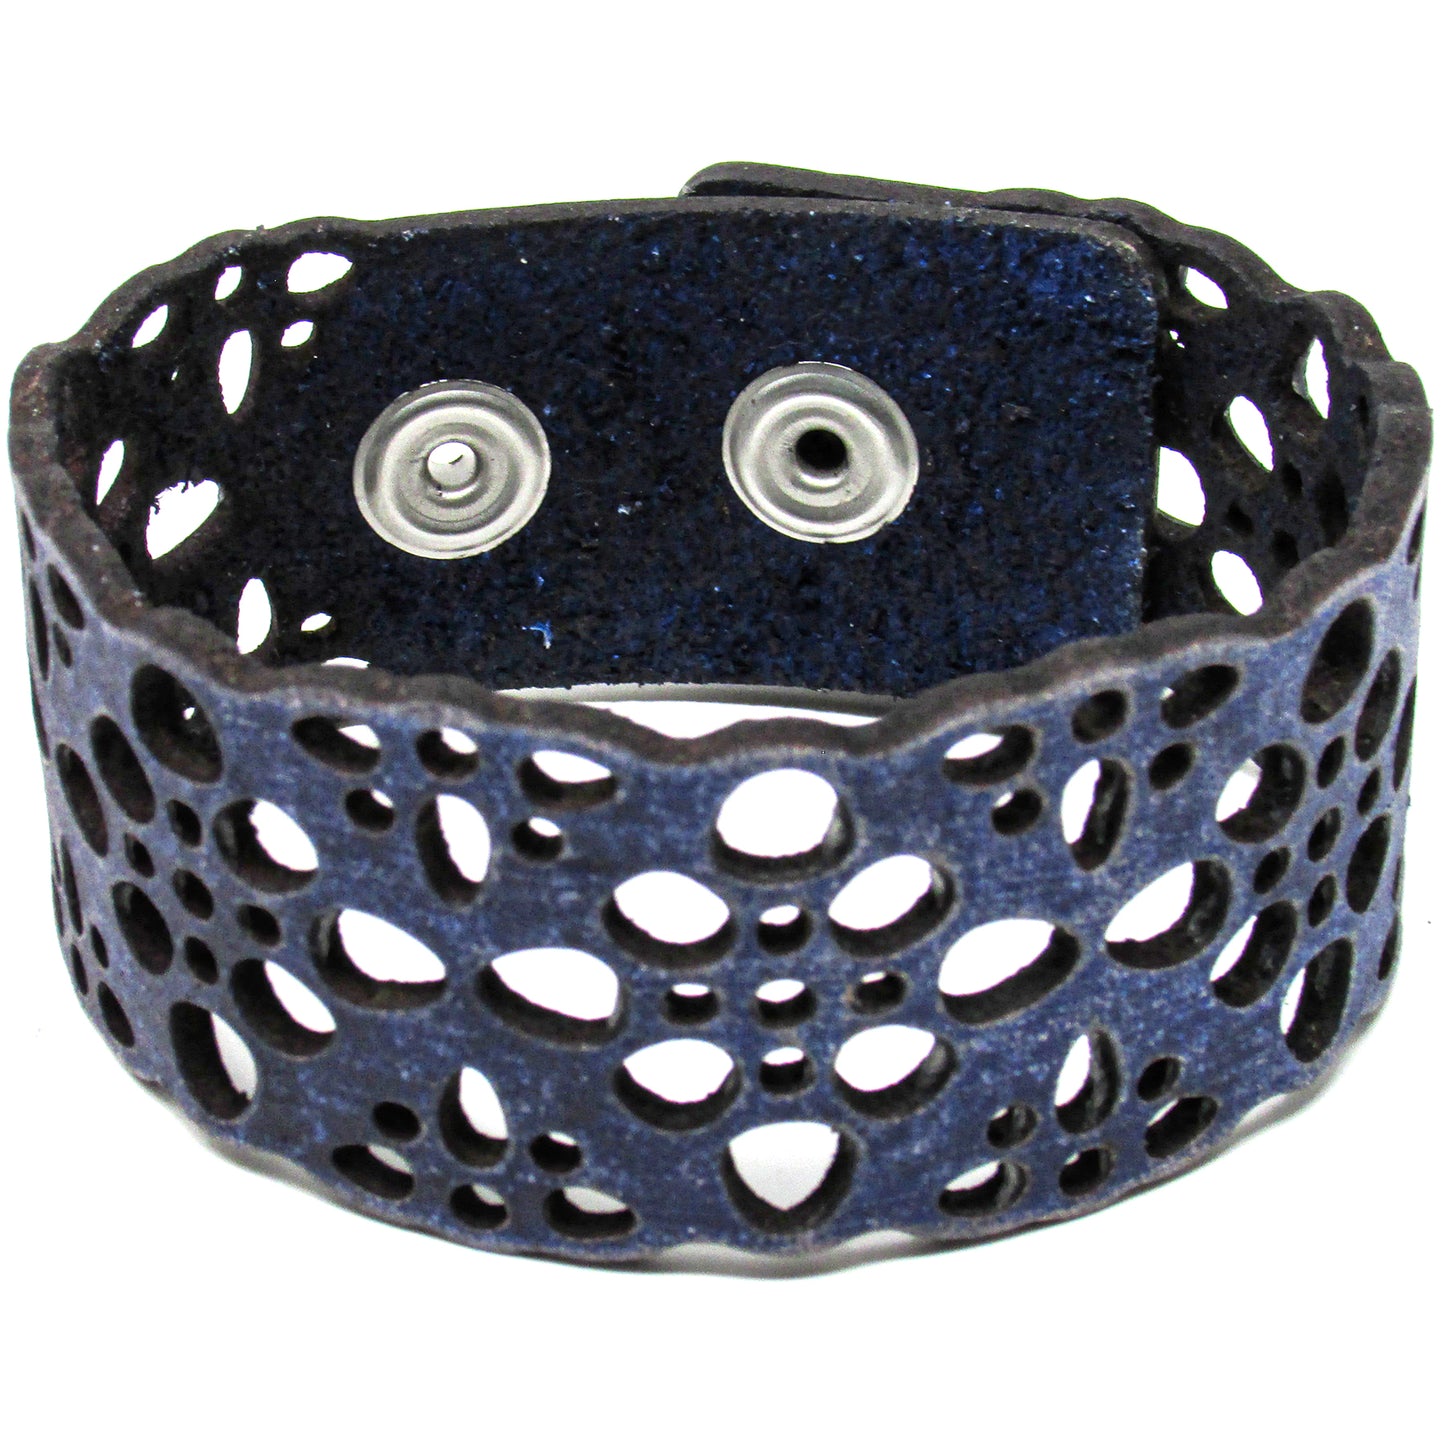 Women's Leather Bracelet